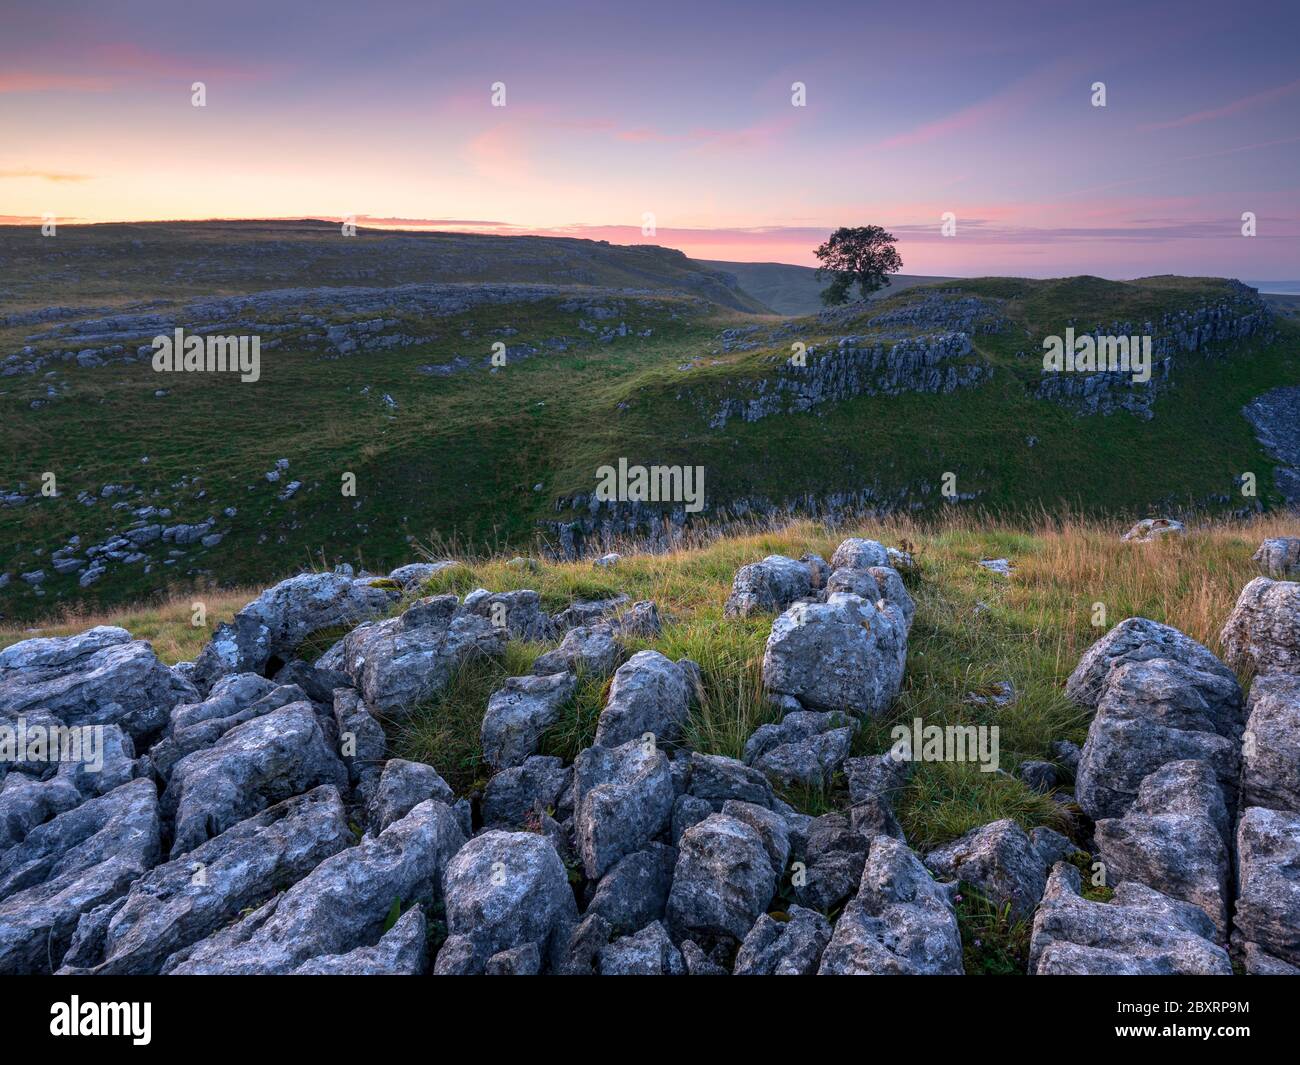 Un arbre isolé coupe l'horizon dans les vallées calcaires de Malham Lings dans le parc national de Yorkshire Dales. La scène est éclairée par un lever de soleil discret. Banque D'Images